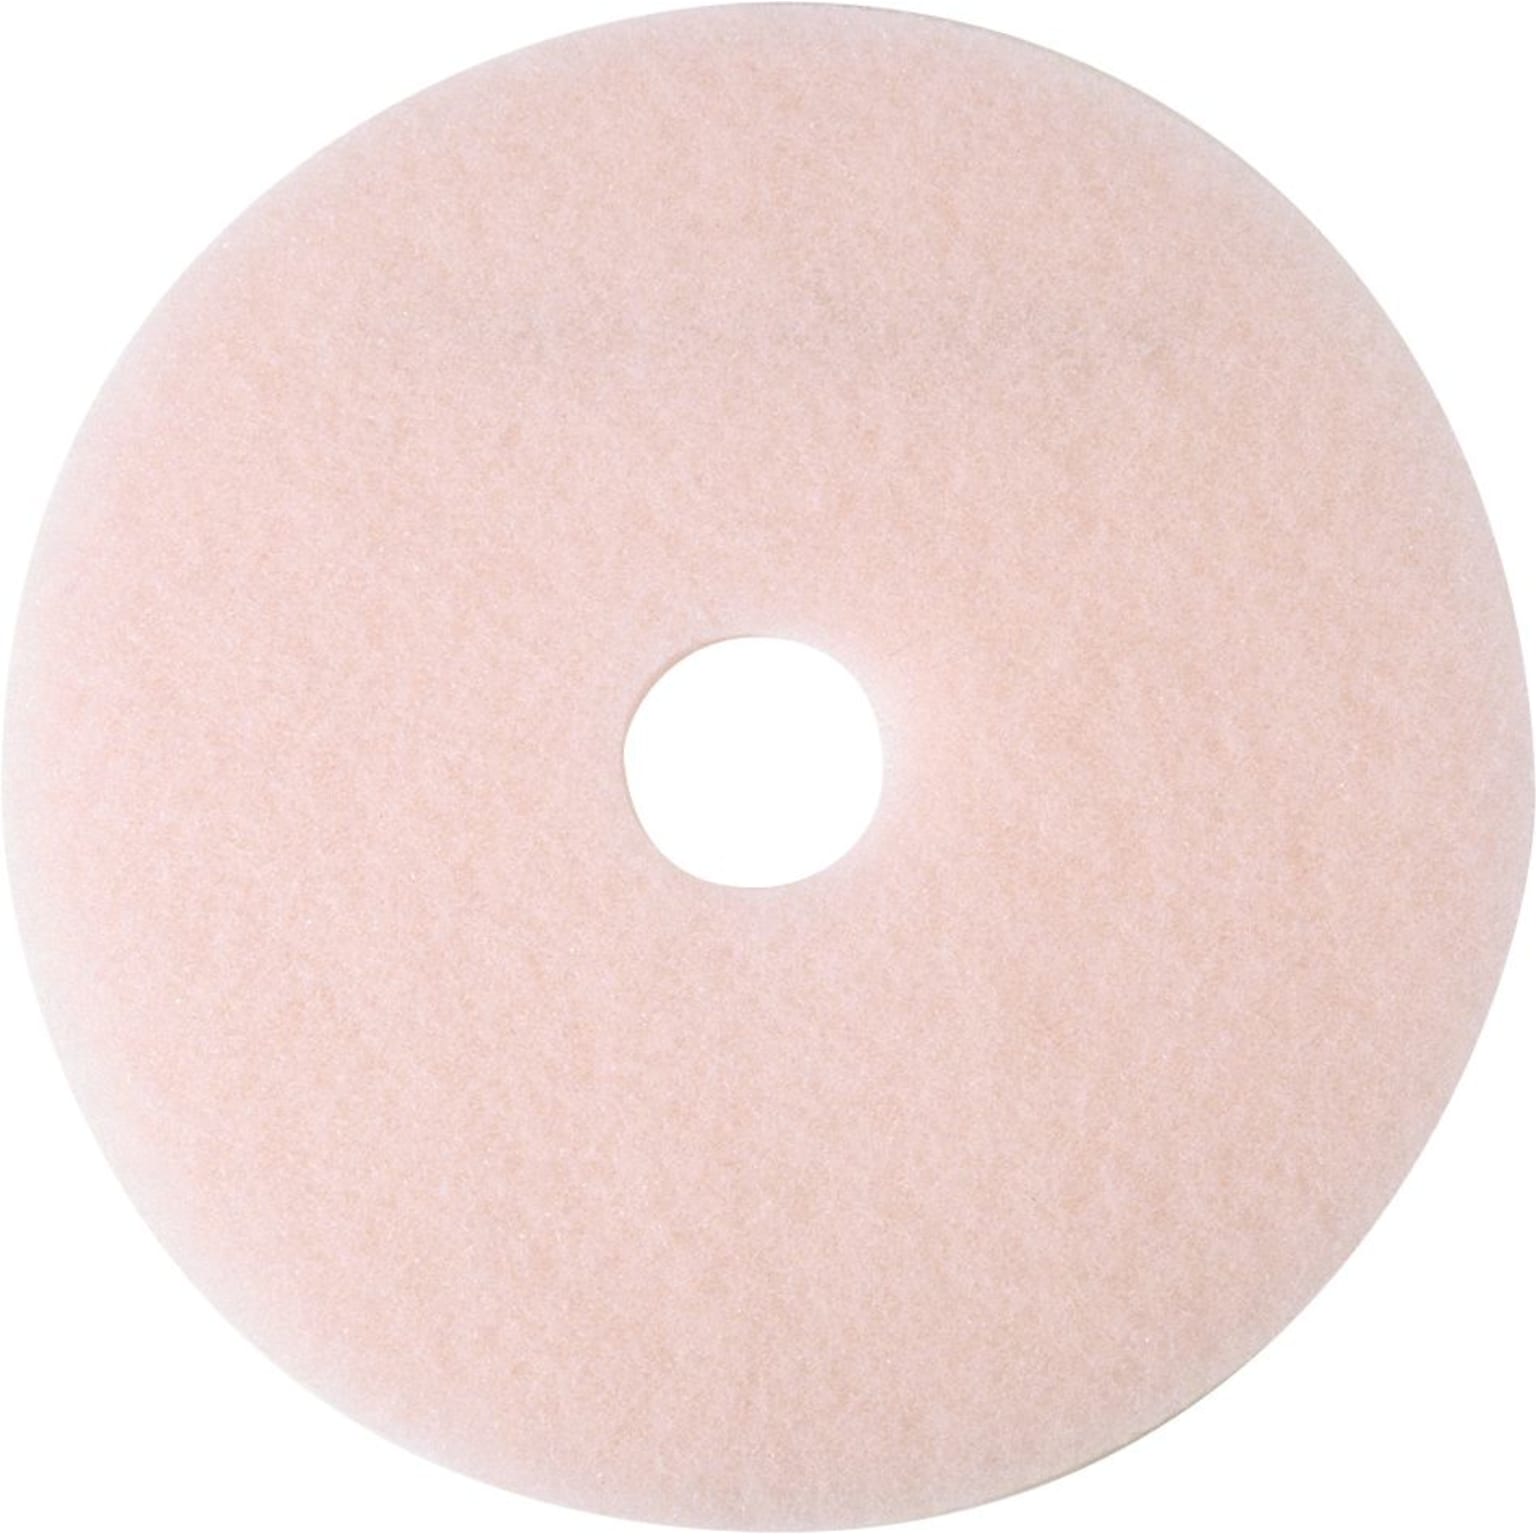 3M 19 Burnish Floor Pad, Pink, 5/Carton (360019)